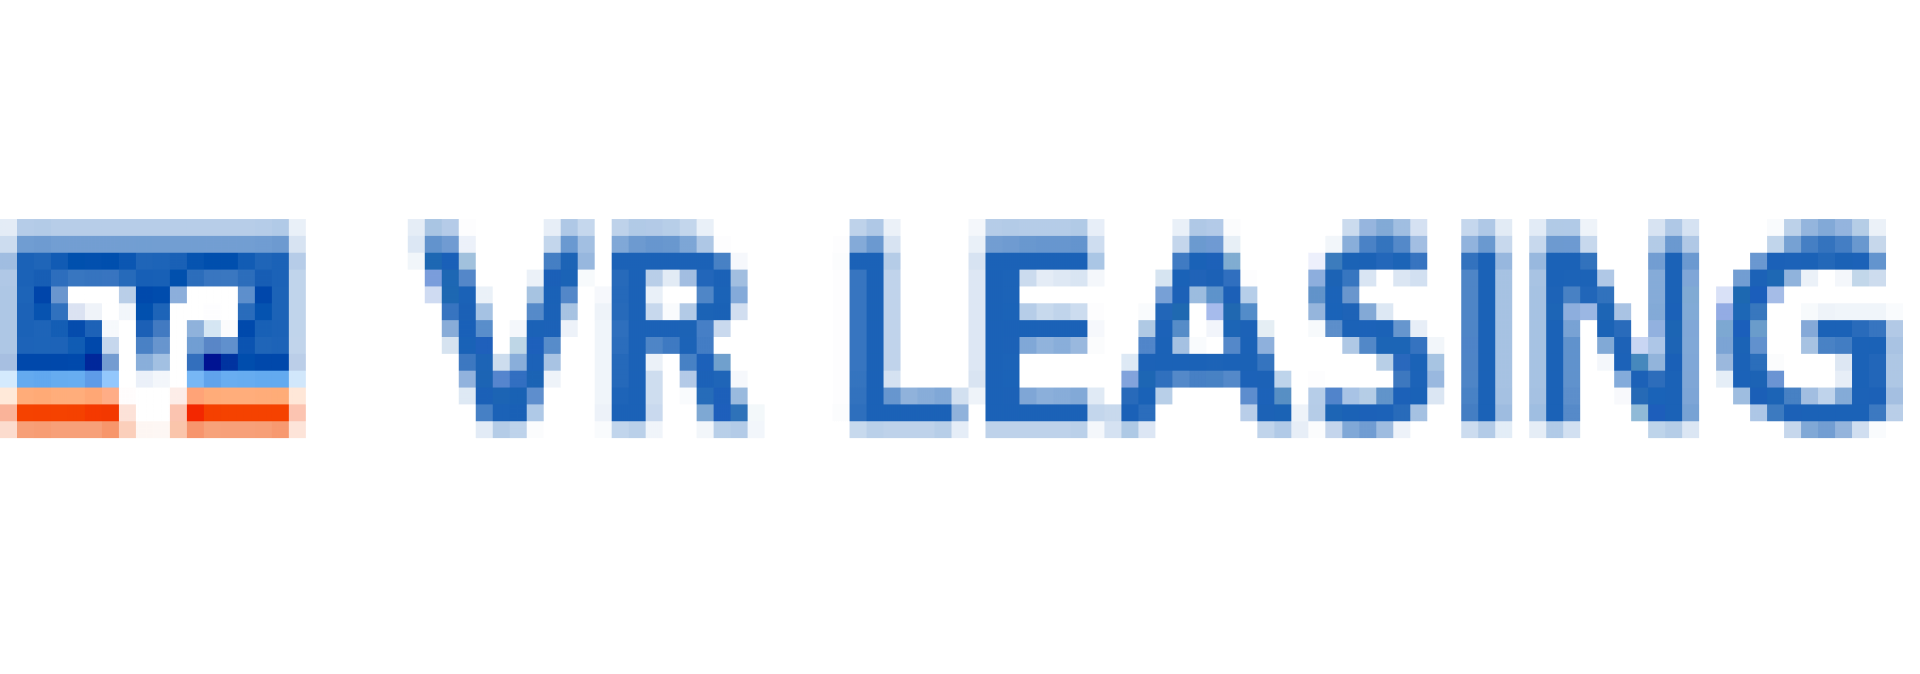 leasing_VR-Leasing